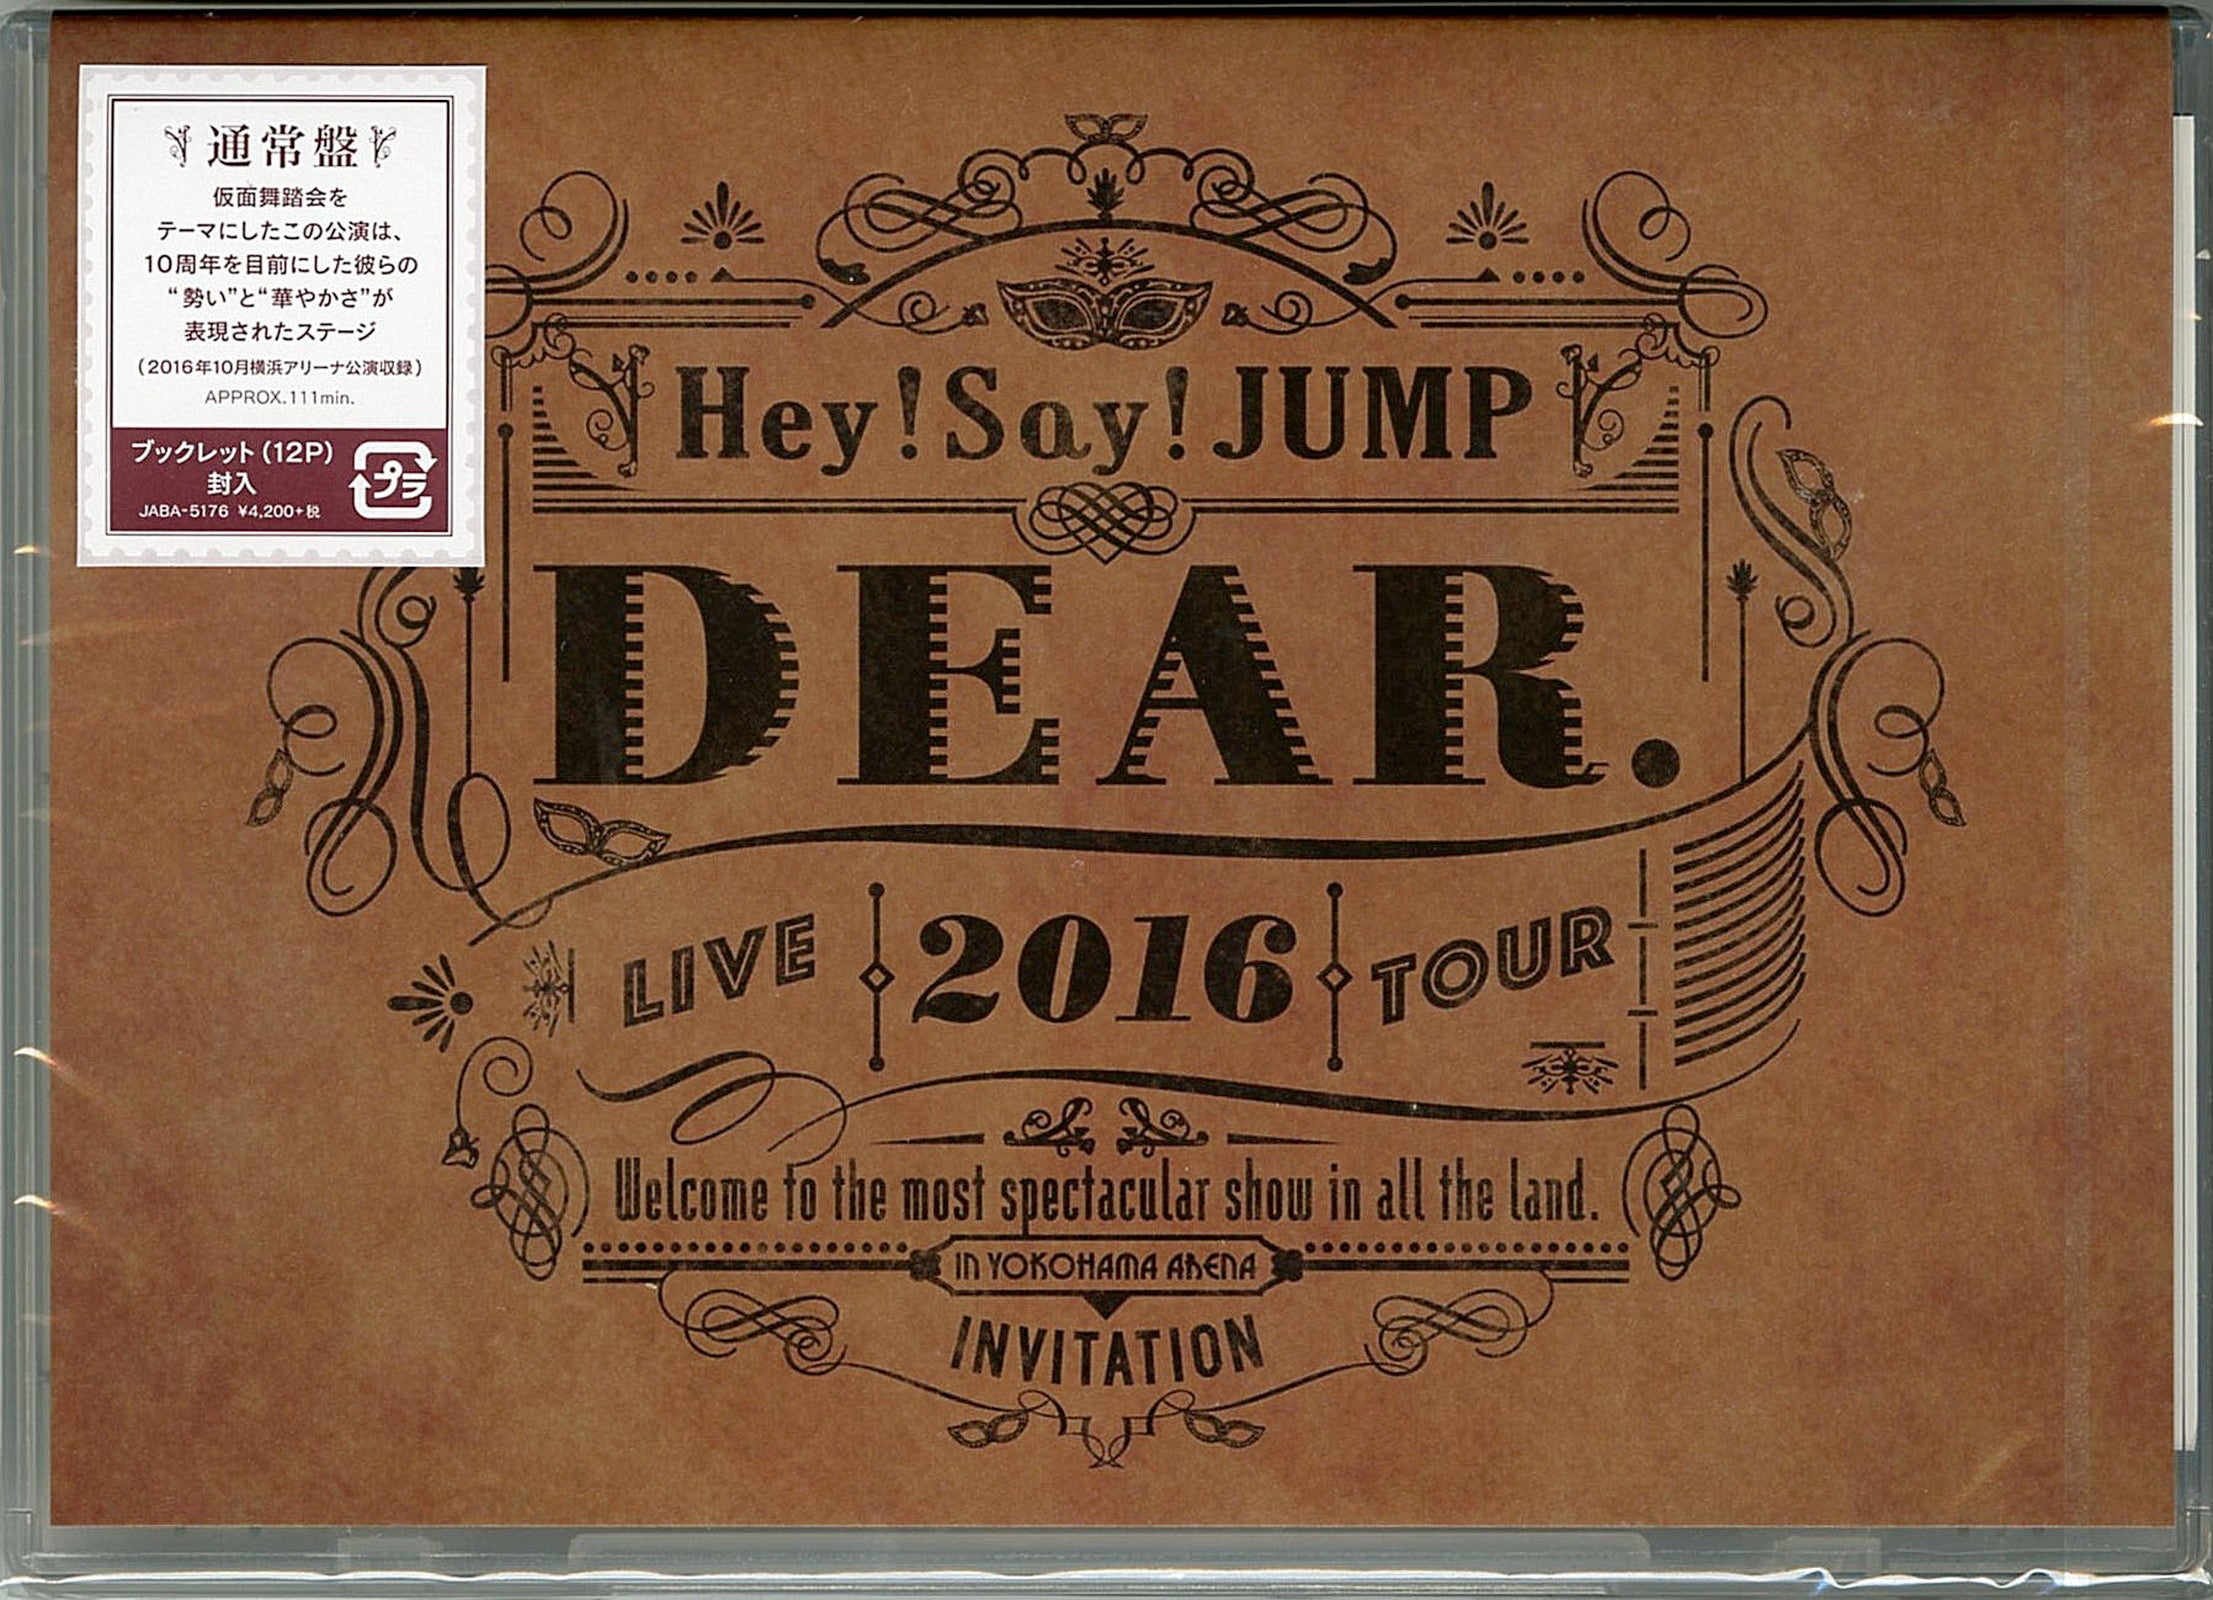 Hey! Say! Jump - Hey! Say! Jump Live Tour 2016 Dear. - Japan DVD